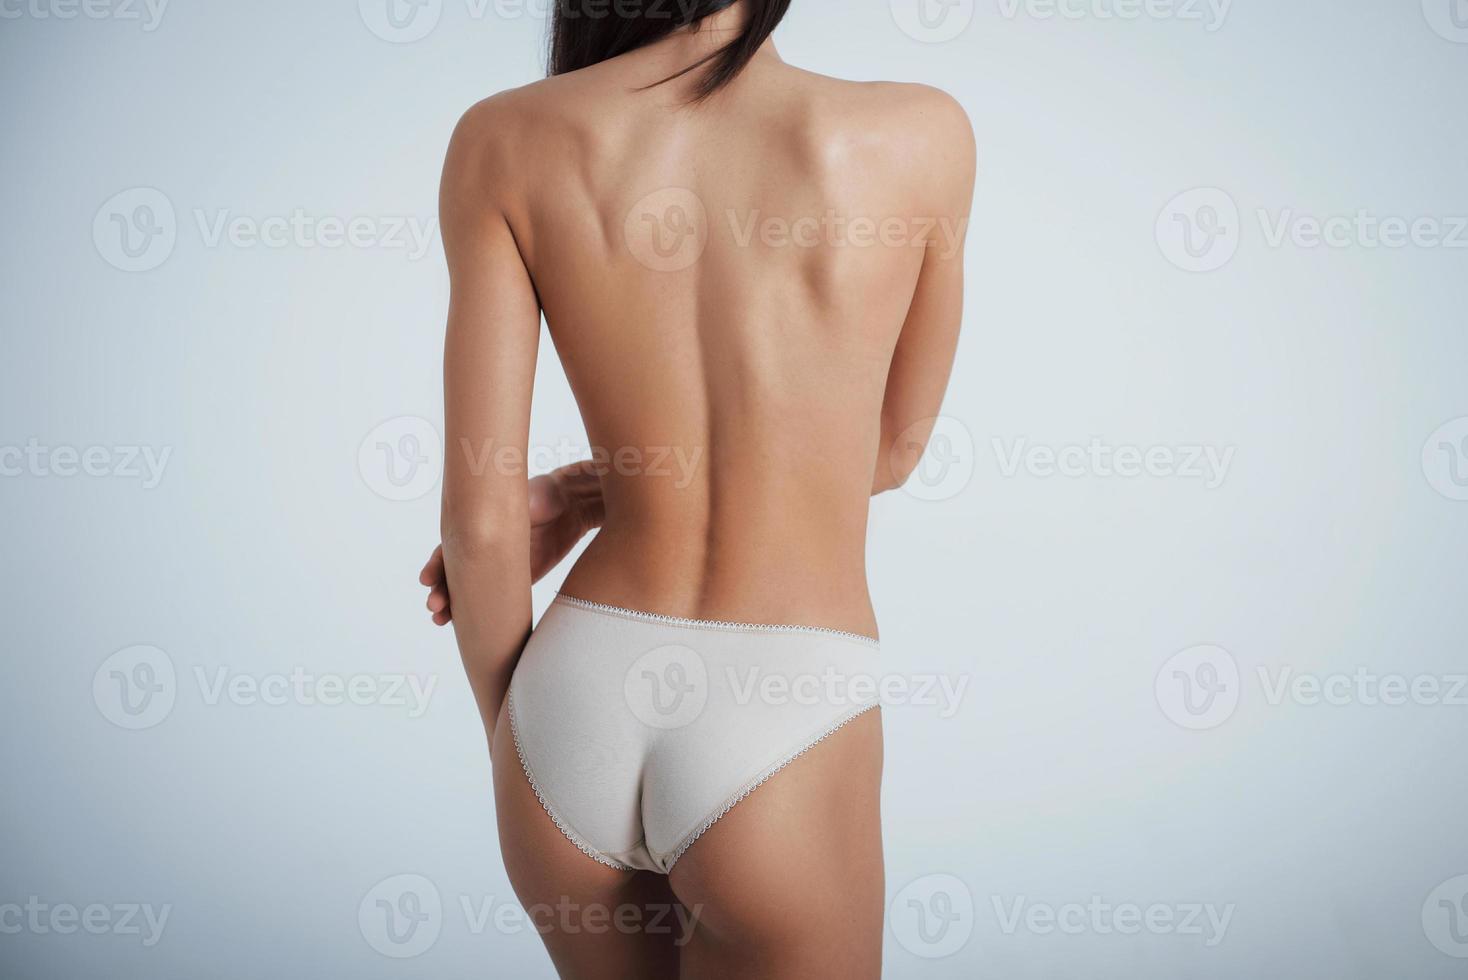 garota com corpo perfeito em cueca branca, virando-se de costas para o fundo branco no estúdio foto